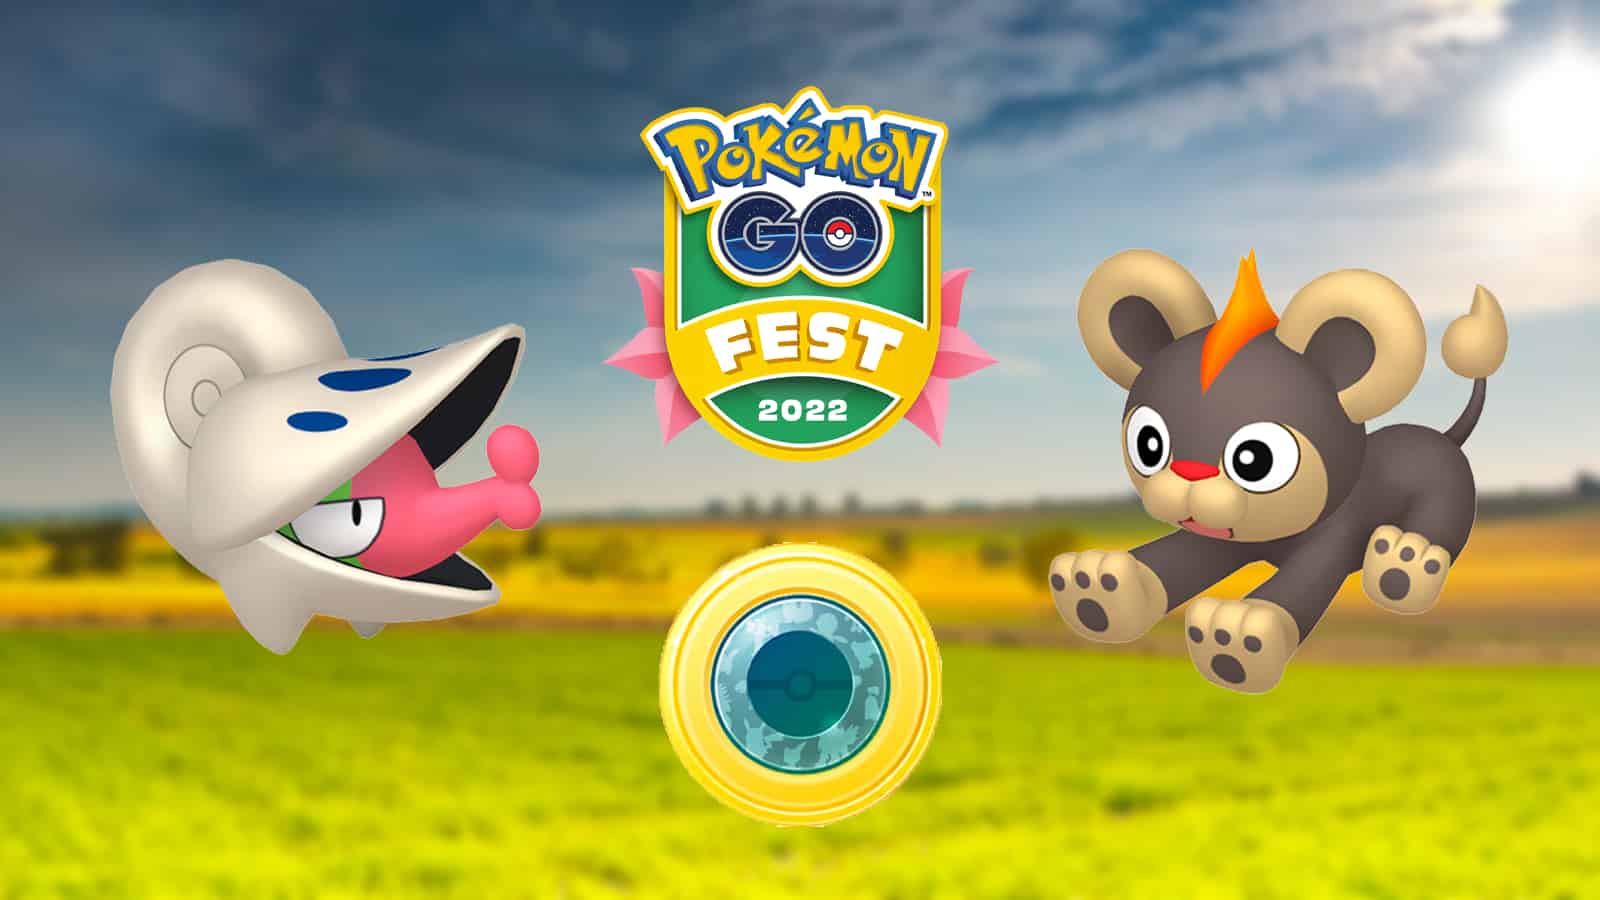 Shelmet in the Plains habitat Collection Challenge for Pokemon Go Fest 2022